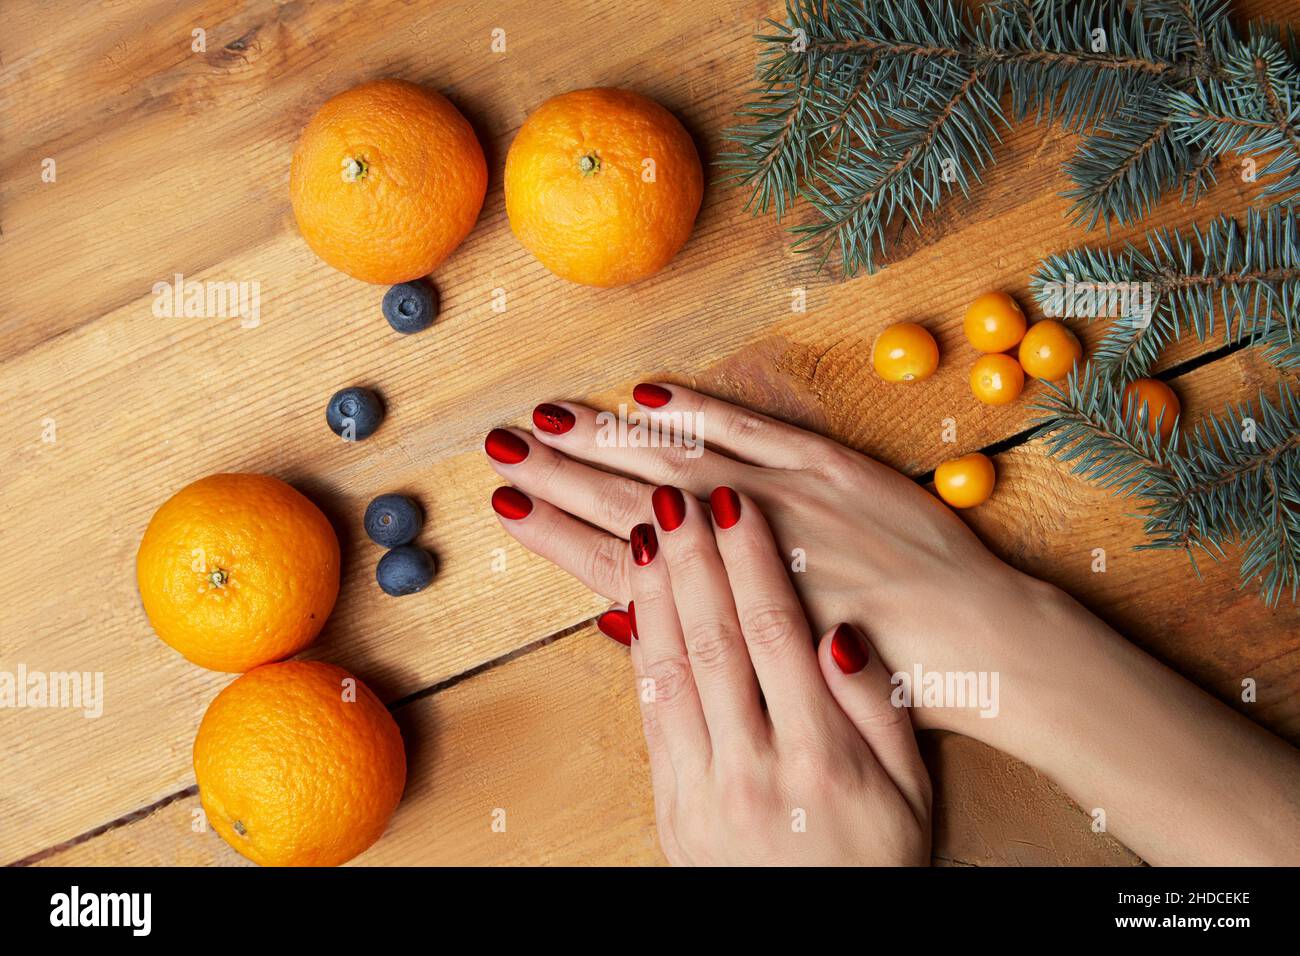 Le mani delle donne con manicure di borgogna che giacciono sul tavolo, vista dall'alto. Comfort domestico, tangerini, ramo di abete su sfondo legno. Foto di alta qualità Foto Stock